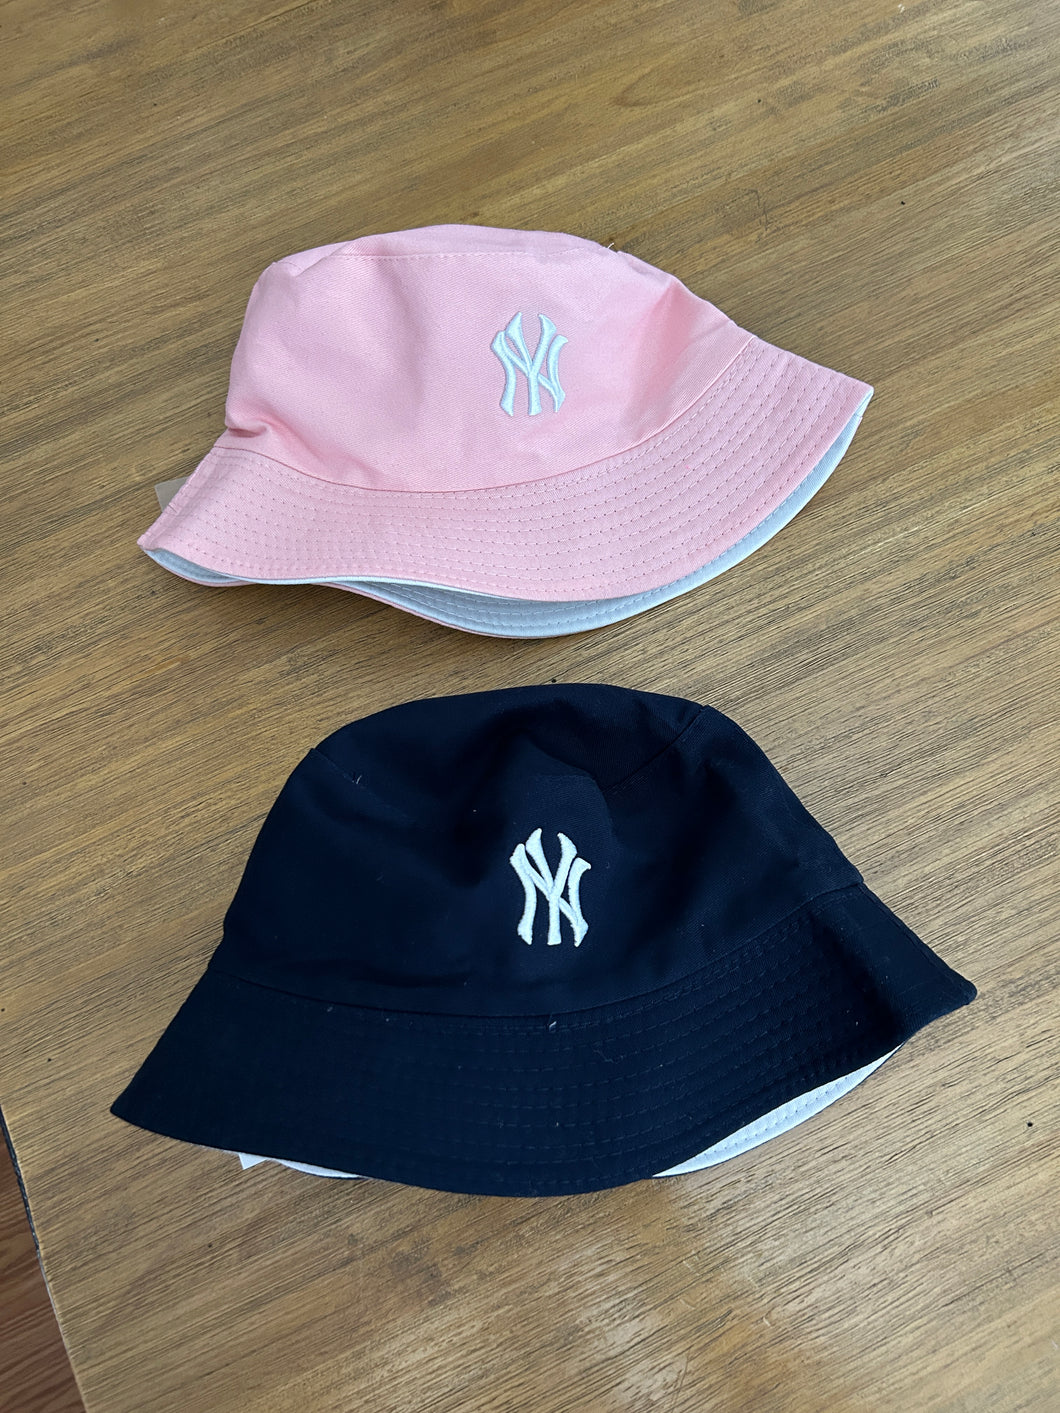 NY BUCKET HAT (2 COLORS)